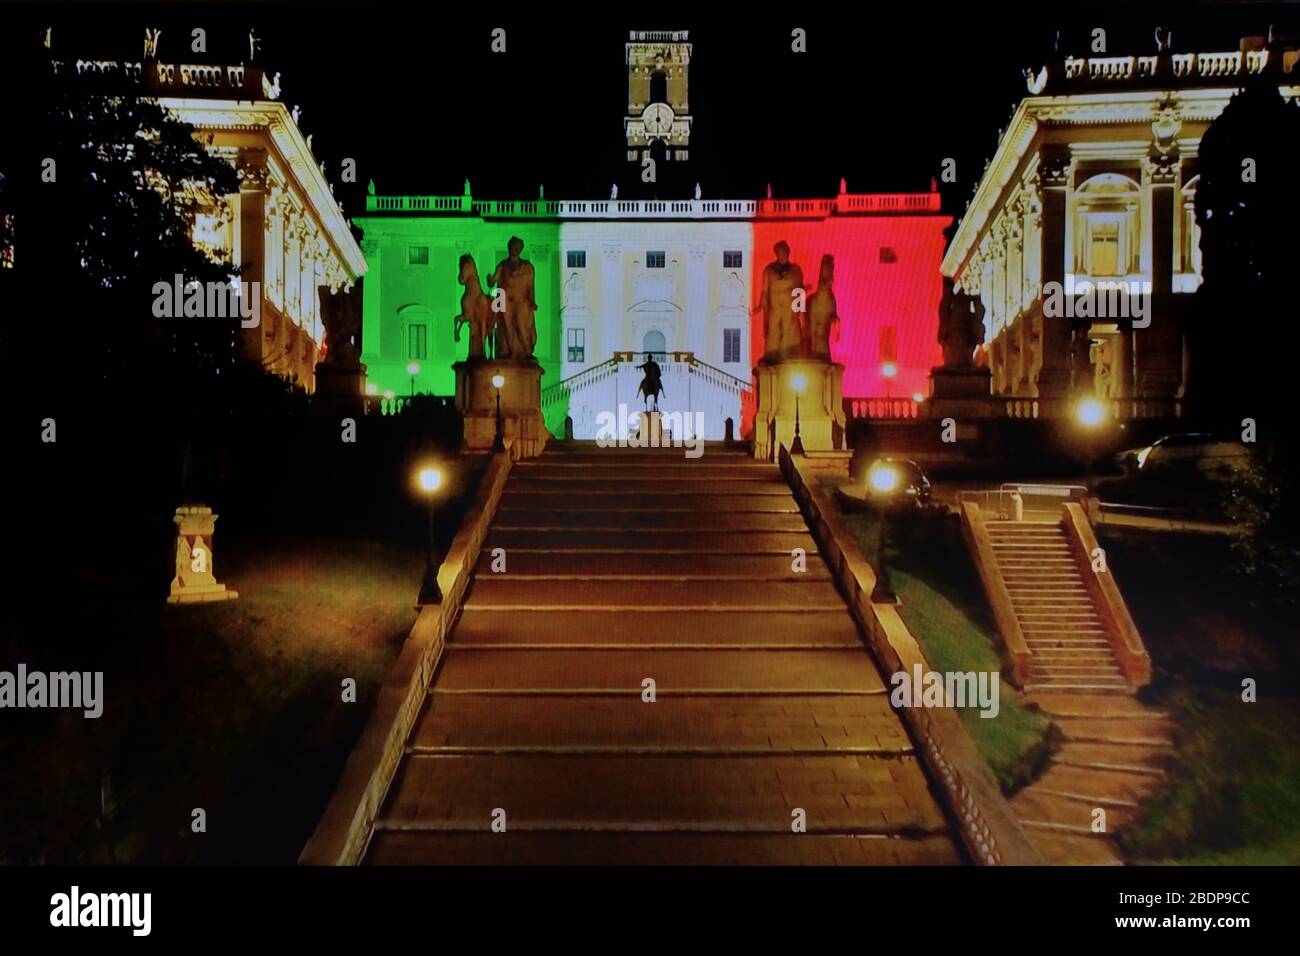 ROM - Italien, Nachtansicht des Campidoglio-Platzes (Palazzo senatorio mit dreifarbigem Licht gemalt), verlassen während der Sperre, die von der Regierung pandemic coronavirus April 2020 verhängt wurde Stockfoto